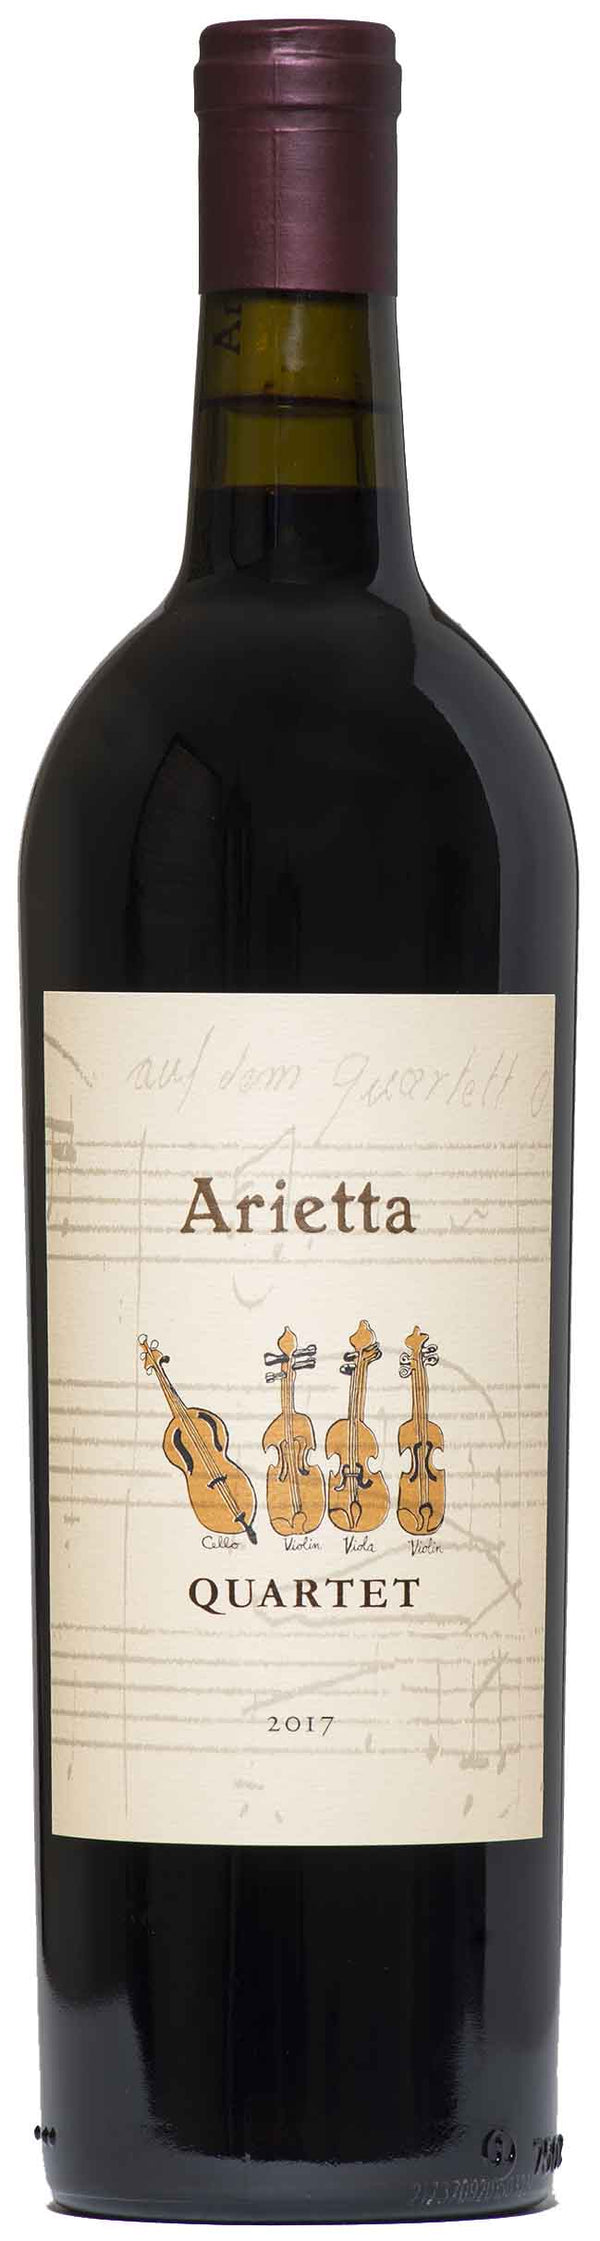 Arietta Quartet Napa Valley Red 2017 750ml